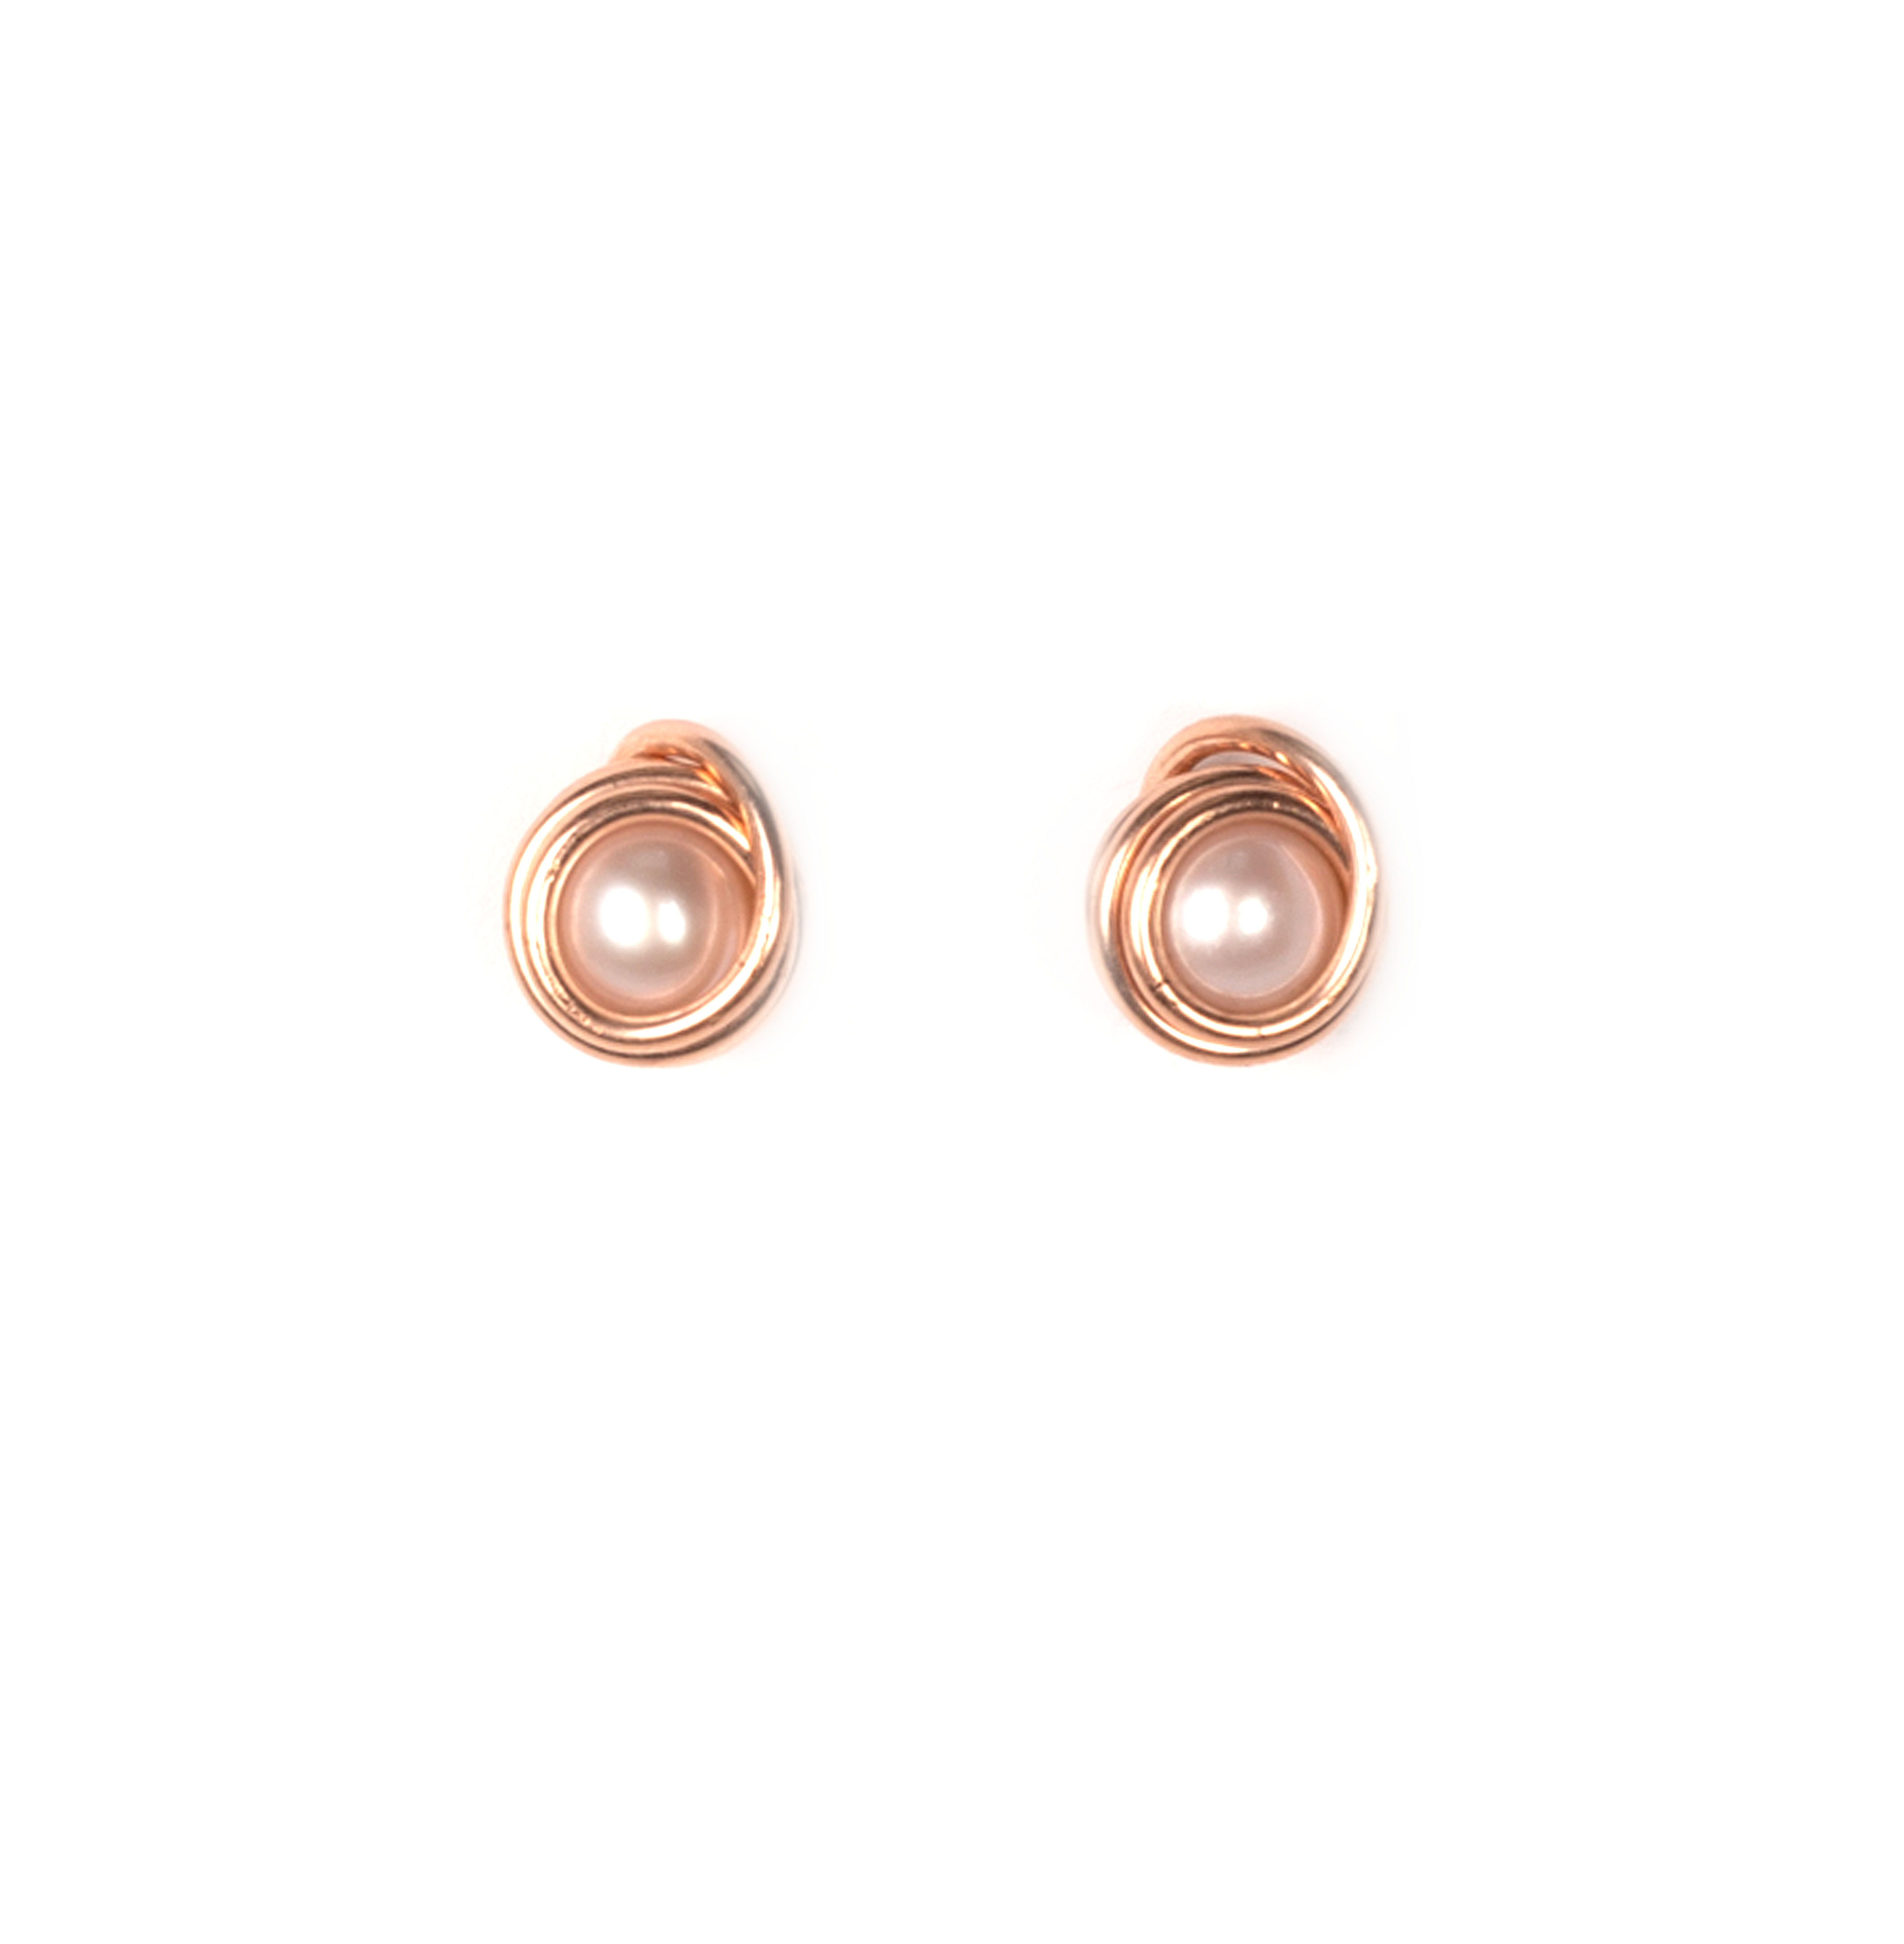 Carmencita Stud Earrings #1 (8mm) - Pearl & Rose Gold Earrings TARBAY   